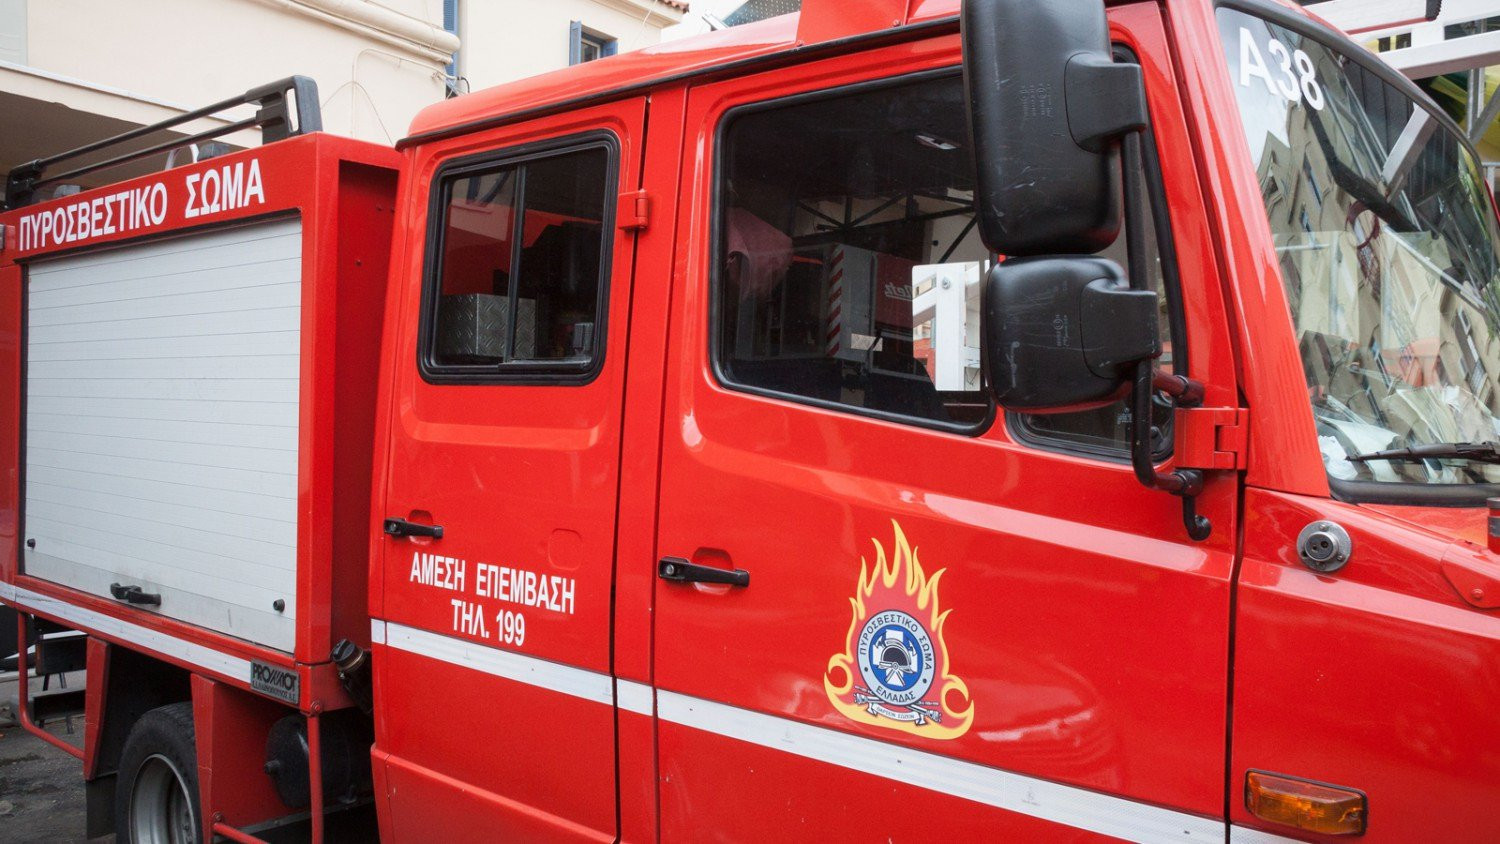 Θεσσαλονίκη: Φωτιά σε κατάστημα στη Νέα Ραιδεστό – Απεγκλωβίστηκαν τέσσερα άτομα